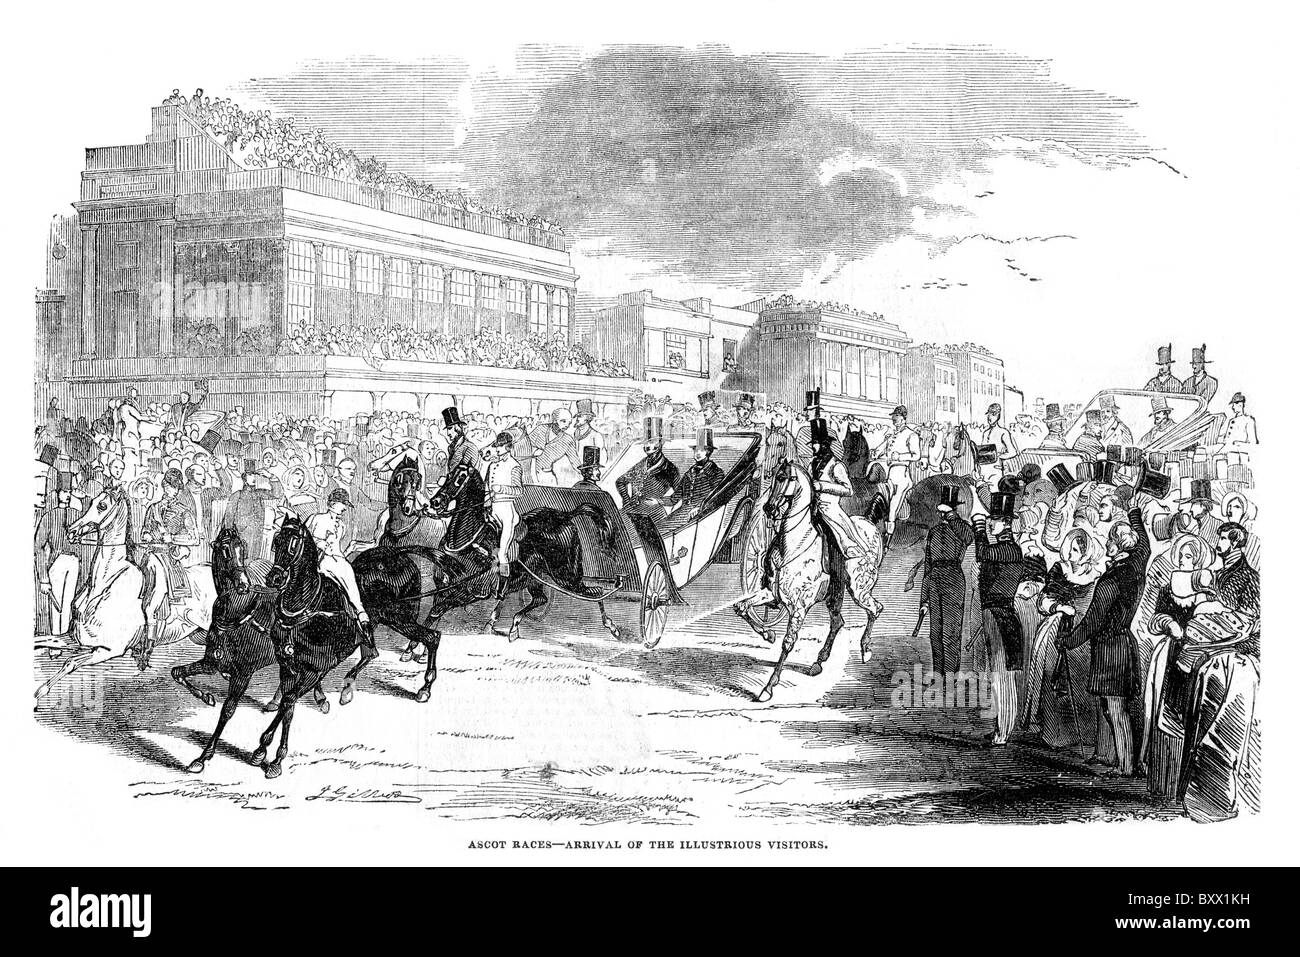 Las carreras de Ascot; La llegada de visitantes ilustres; siglo xix; ilustración en blanco y negro. Foto de stock